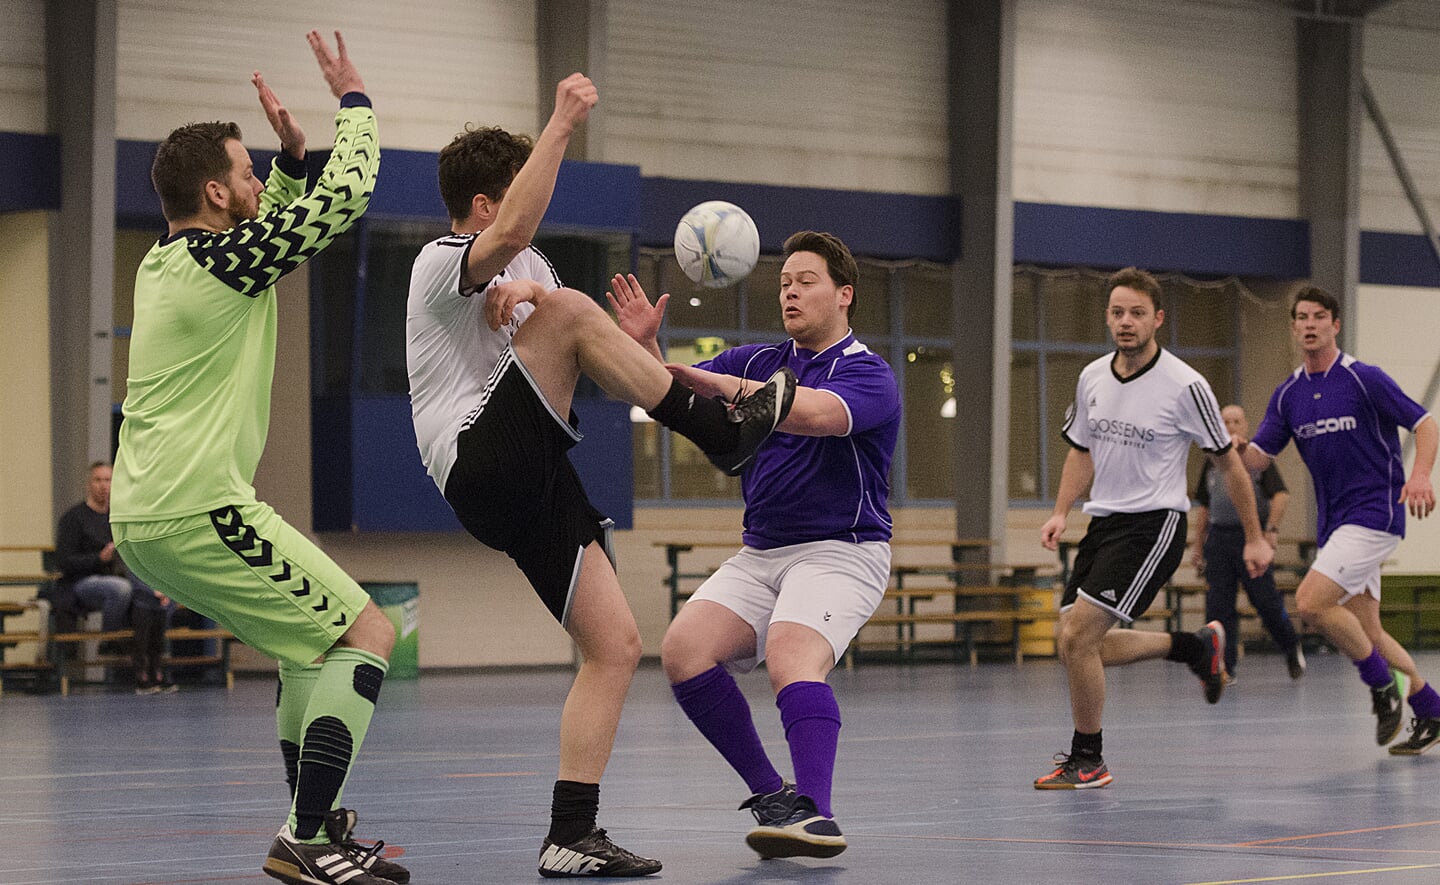 Zaalvoetballers in actie in sporthal De Braken.